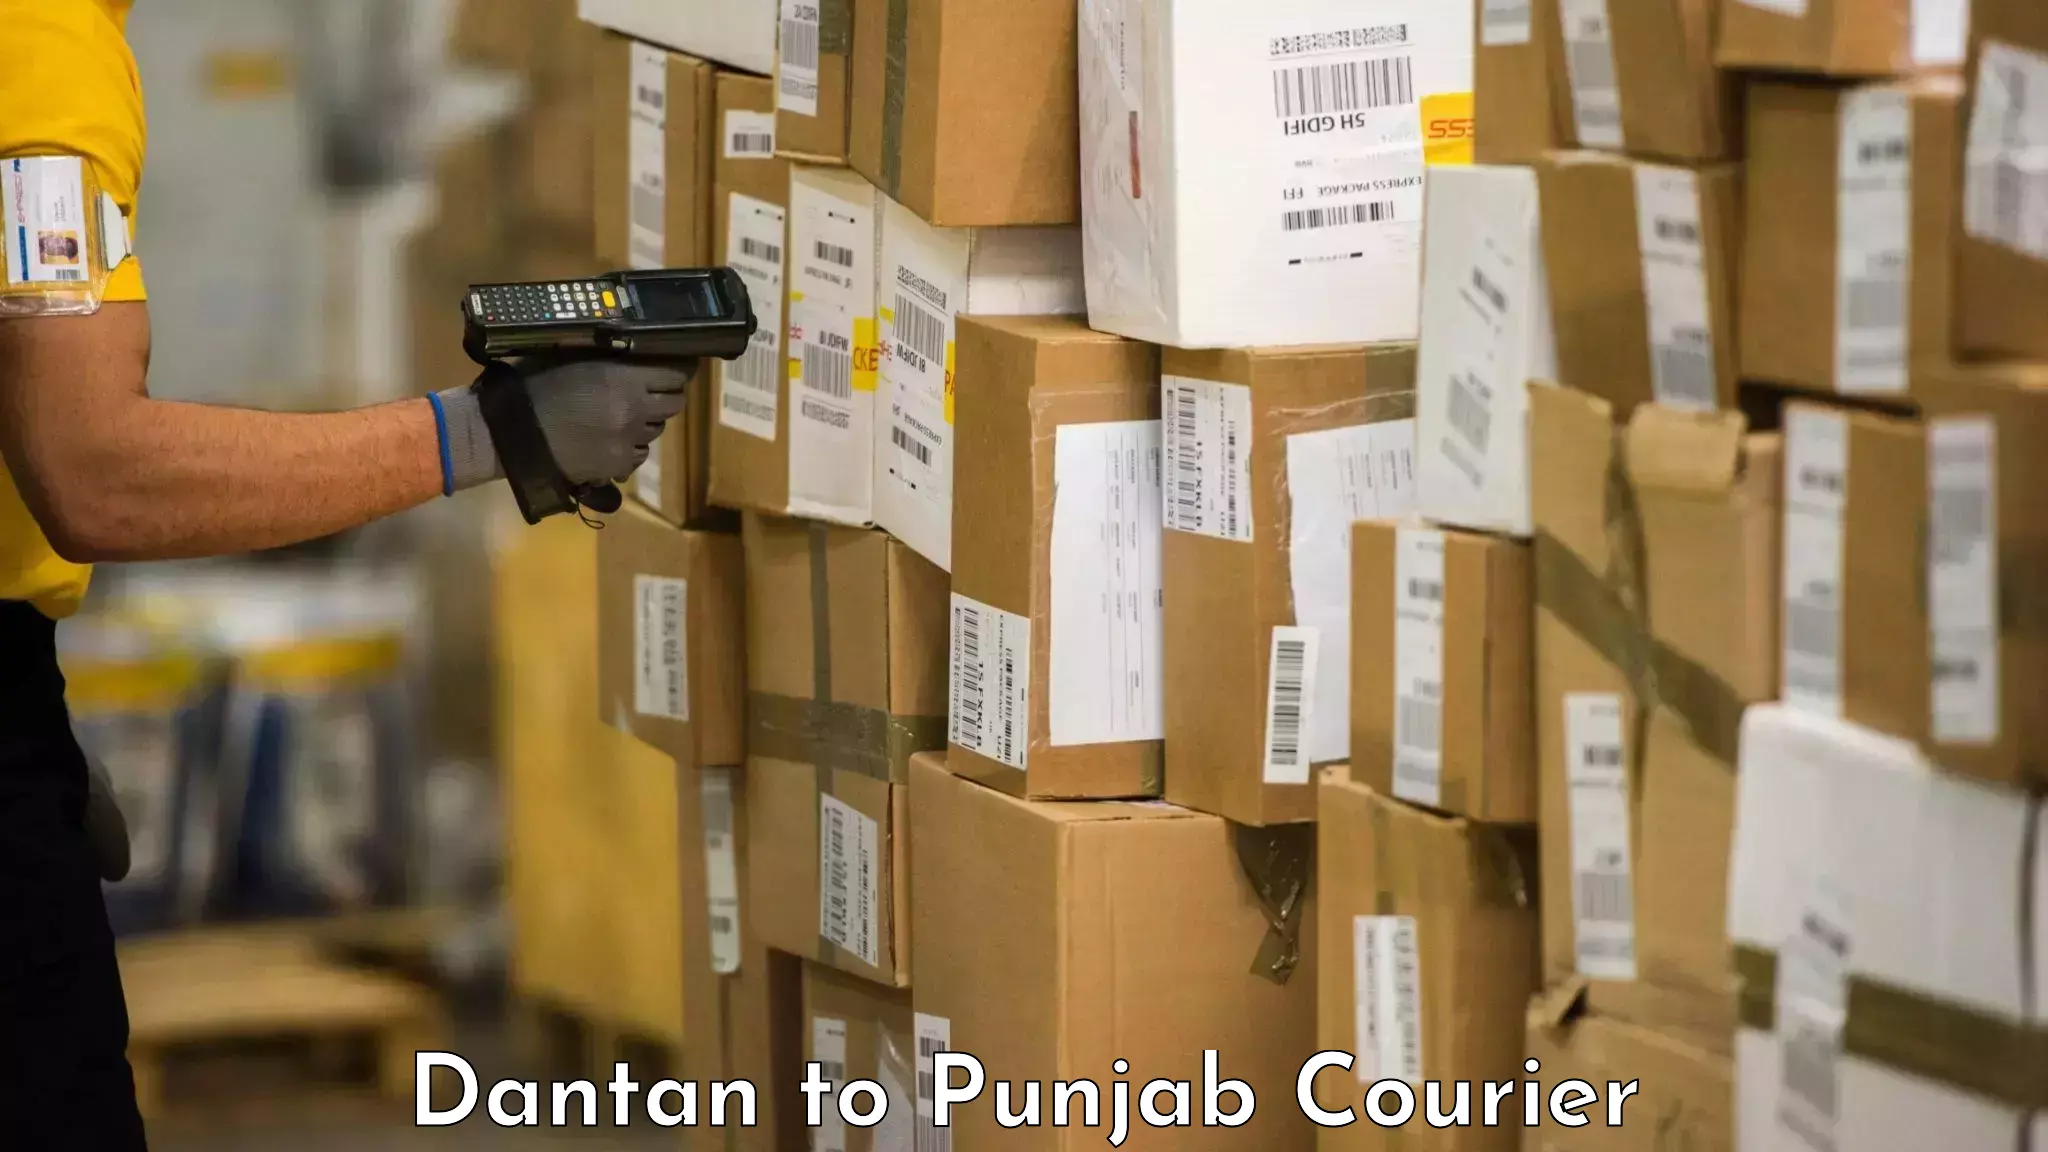 Door-to-door baggage service Dantan to Punjab